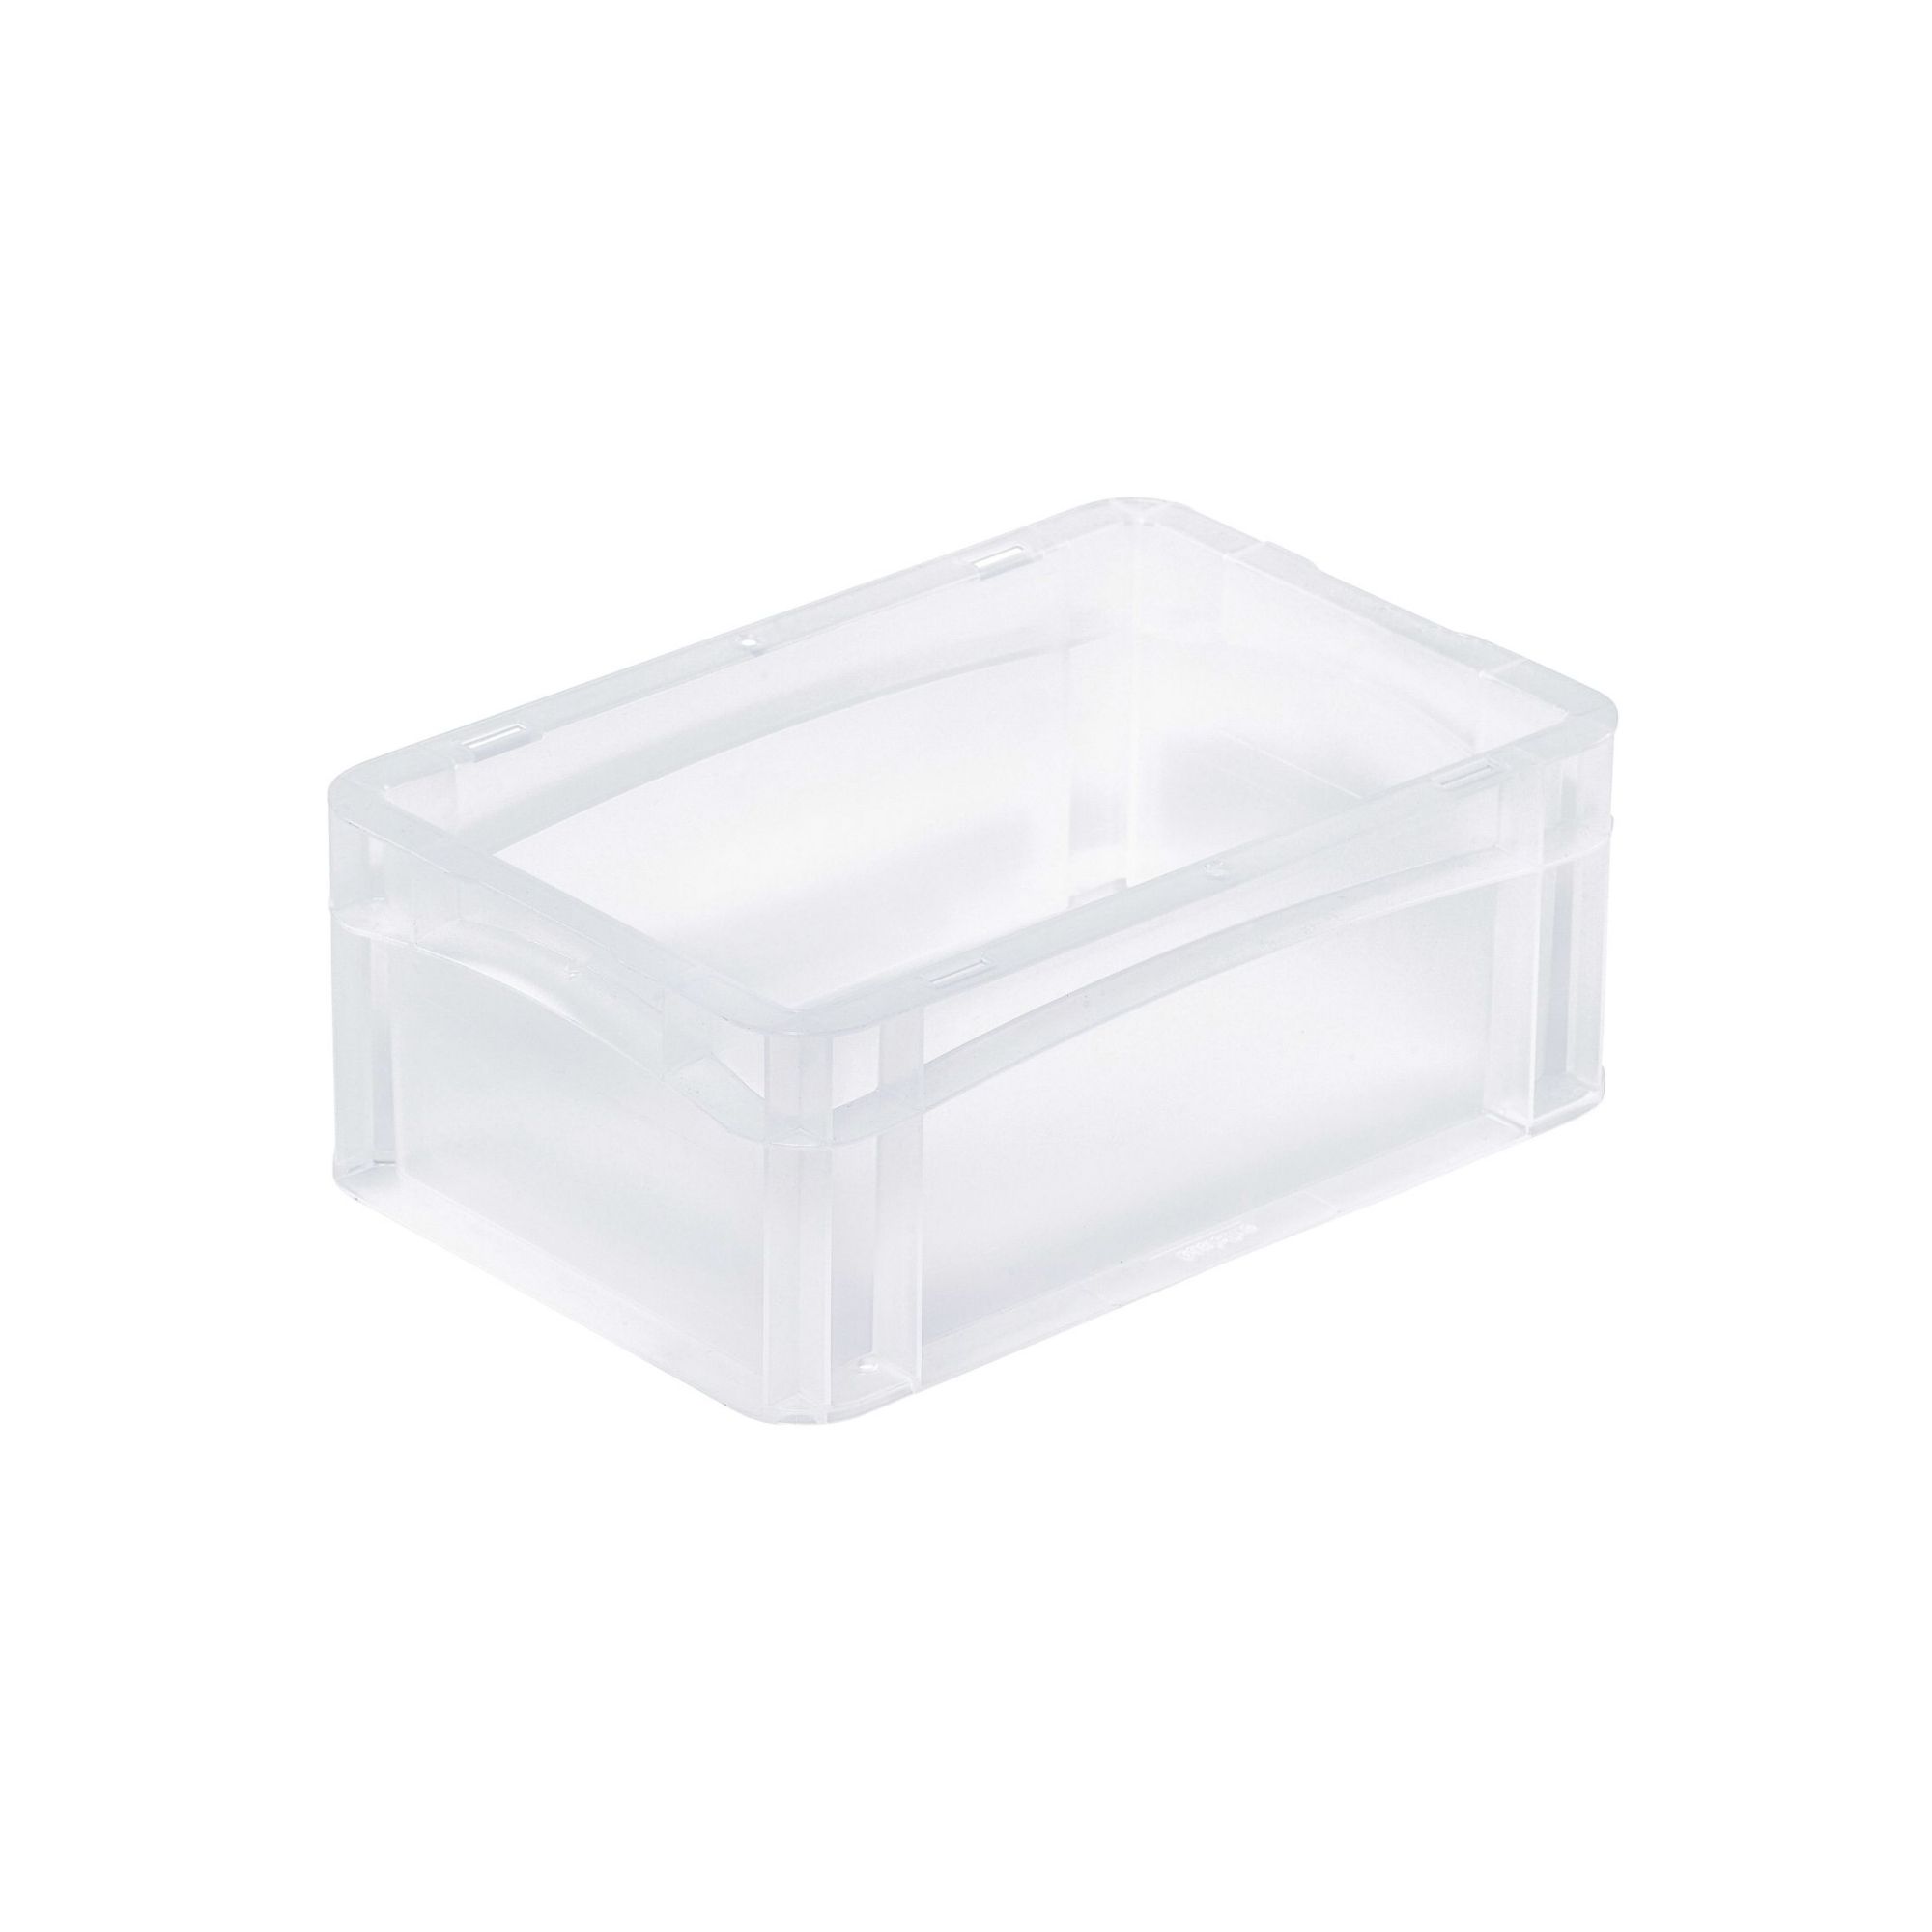 Transparenter Eurobehälter BasicLine mit geschlossenem Griff | HxBxT 12x20x30cm | 5,1 Liter | Eurobox, Transportbox, Transportbehälter, Stapelbehälter